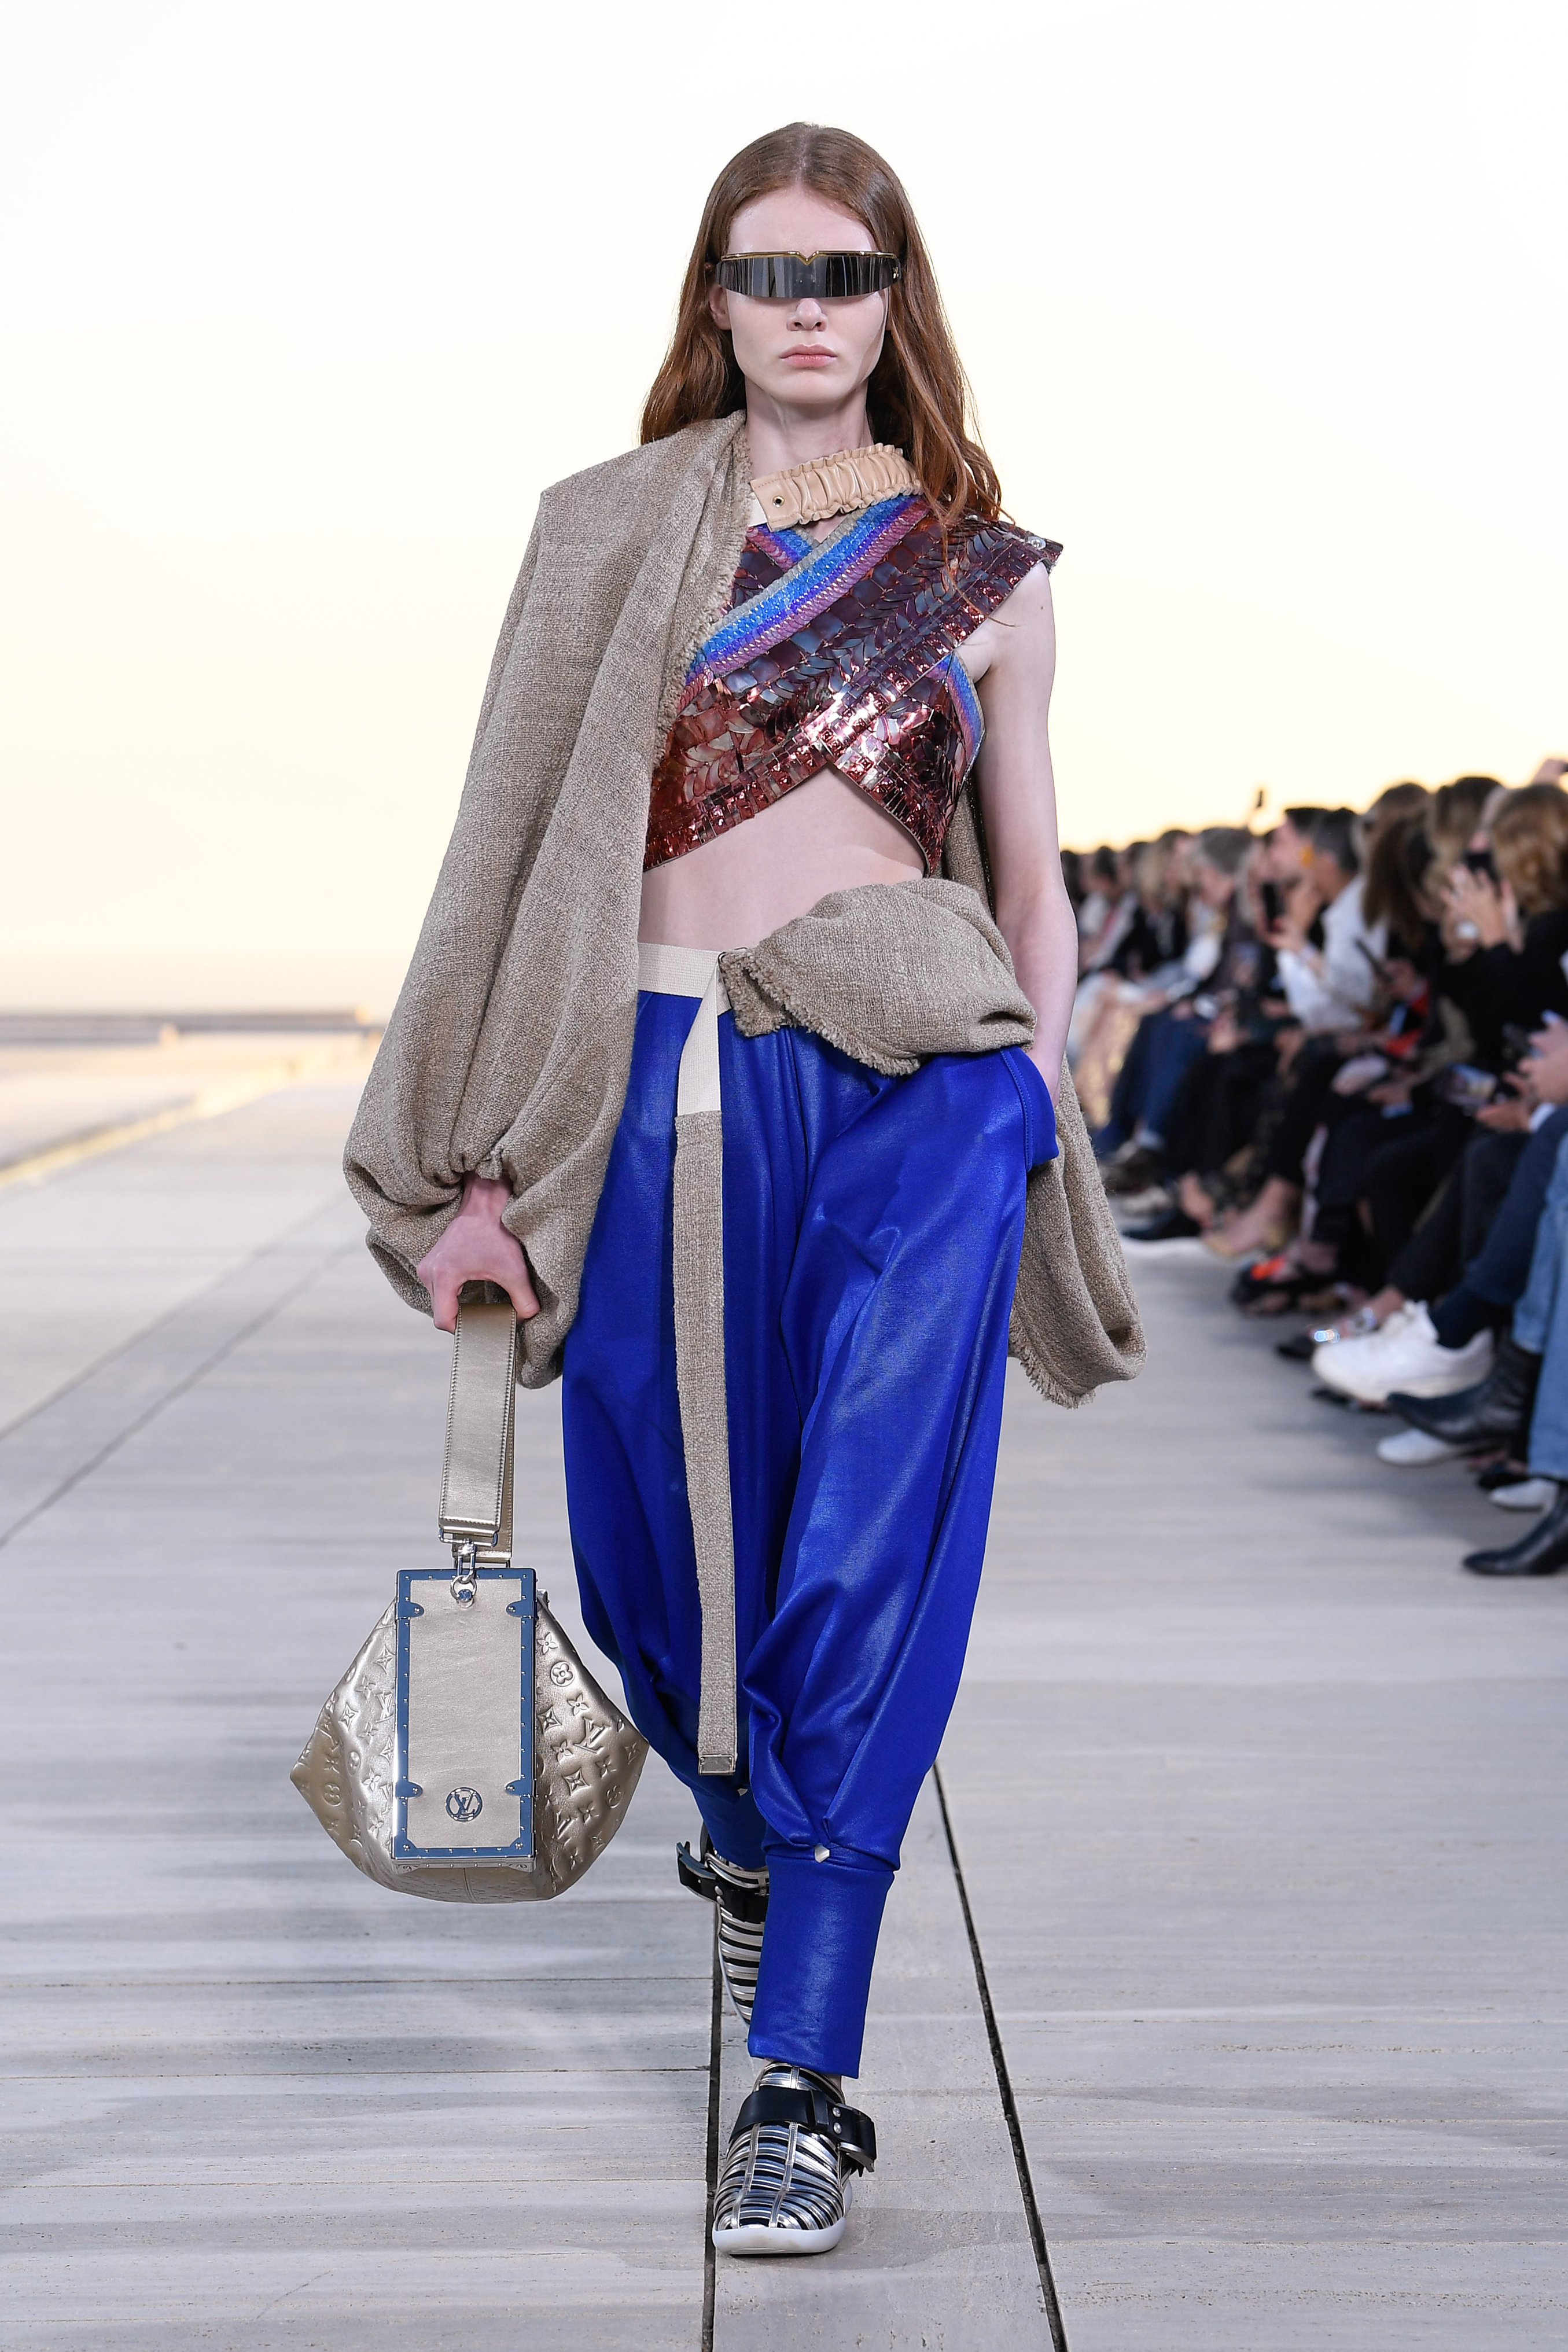 Zíperes enormes e bolsas exageradas em desfile da Louis Vuitton em